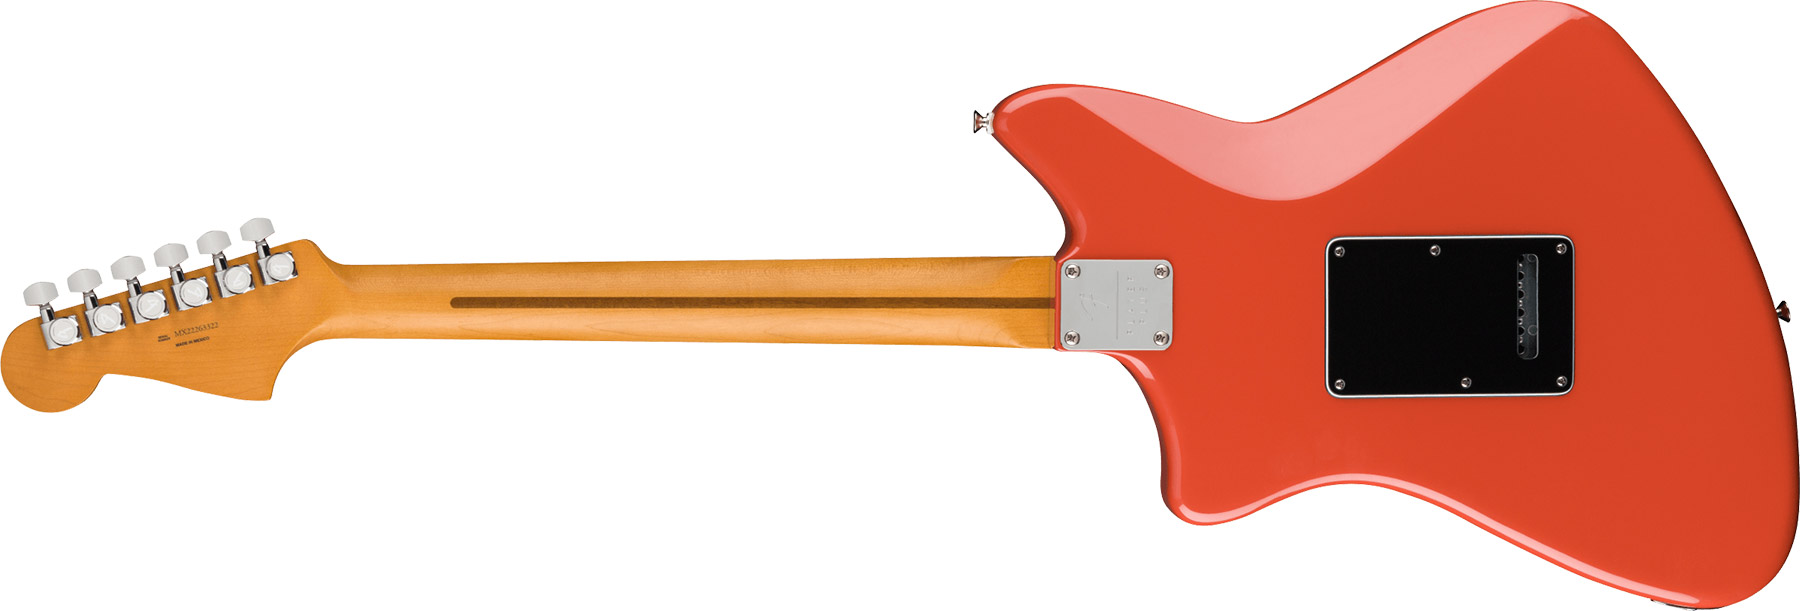 Fender Meteora Player Plus Hh Mex 2023 2s Ht Pf - Fiesta Red - Retro-rock elektrische gitaar - Variation 1